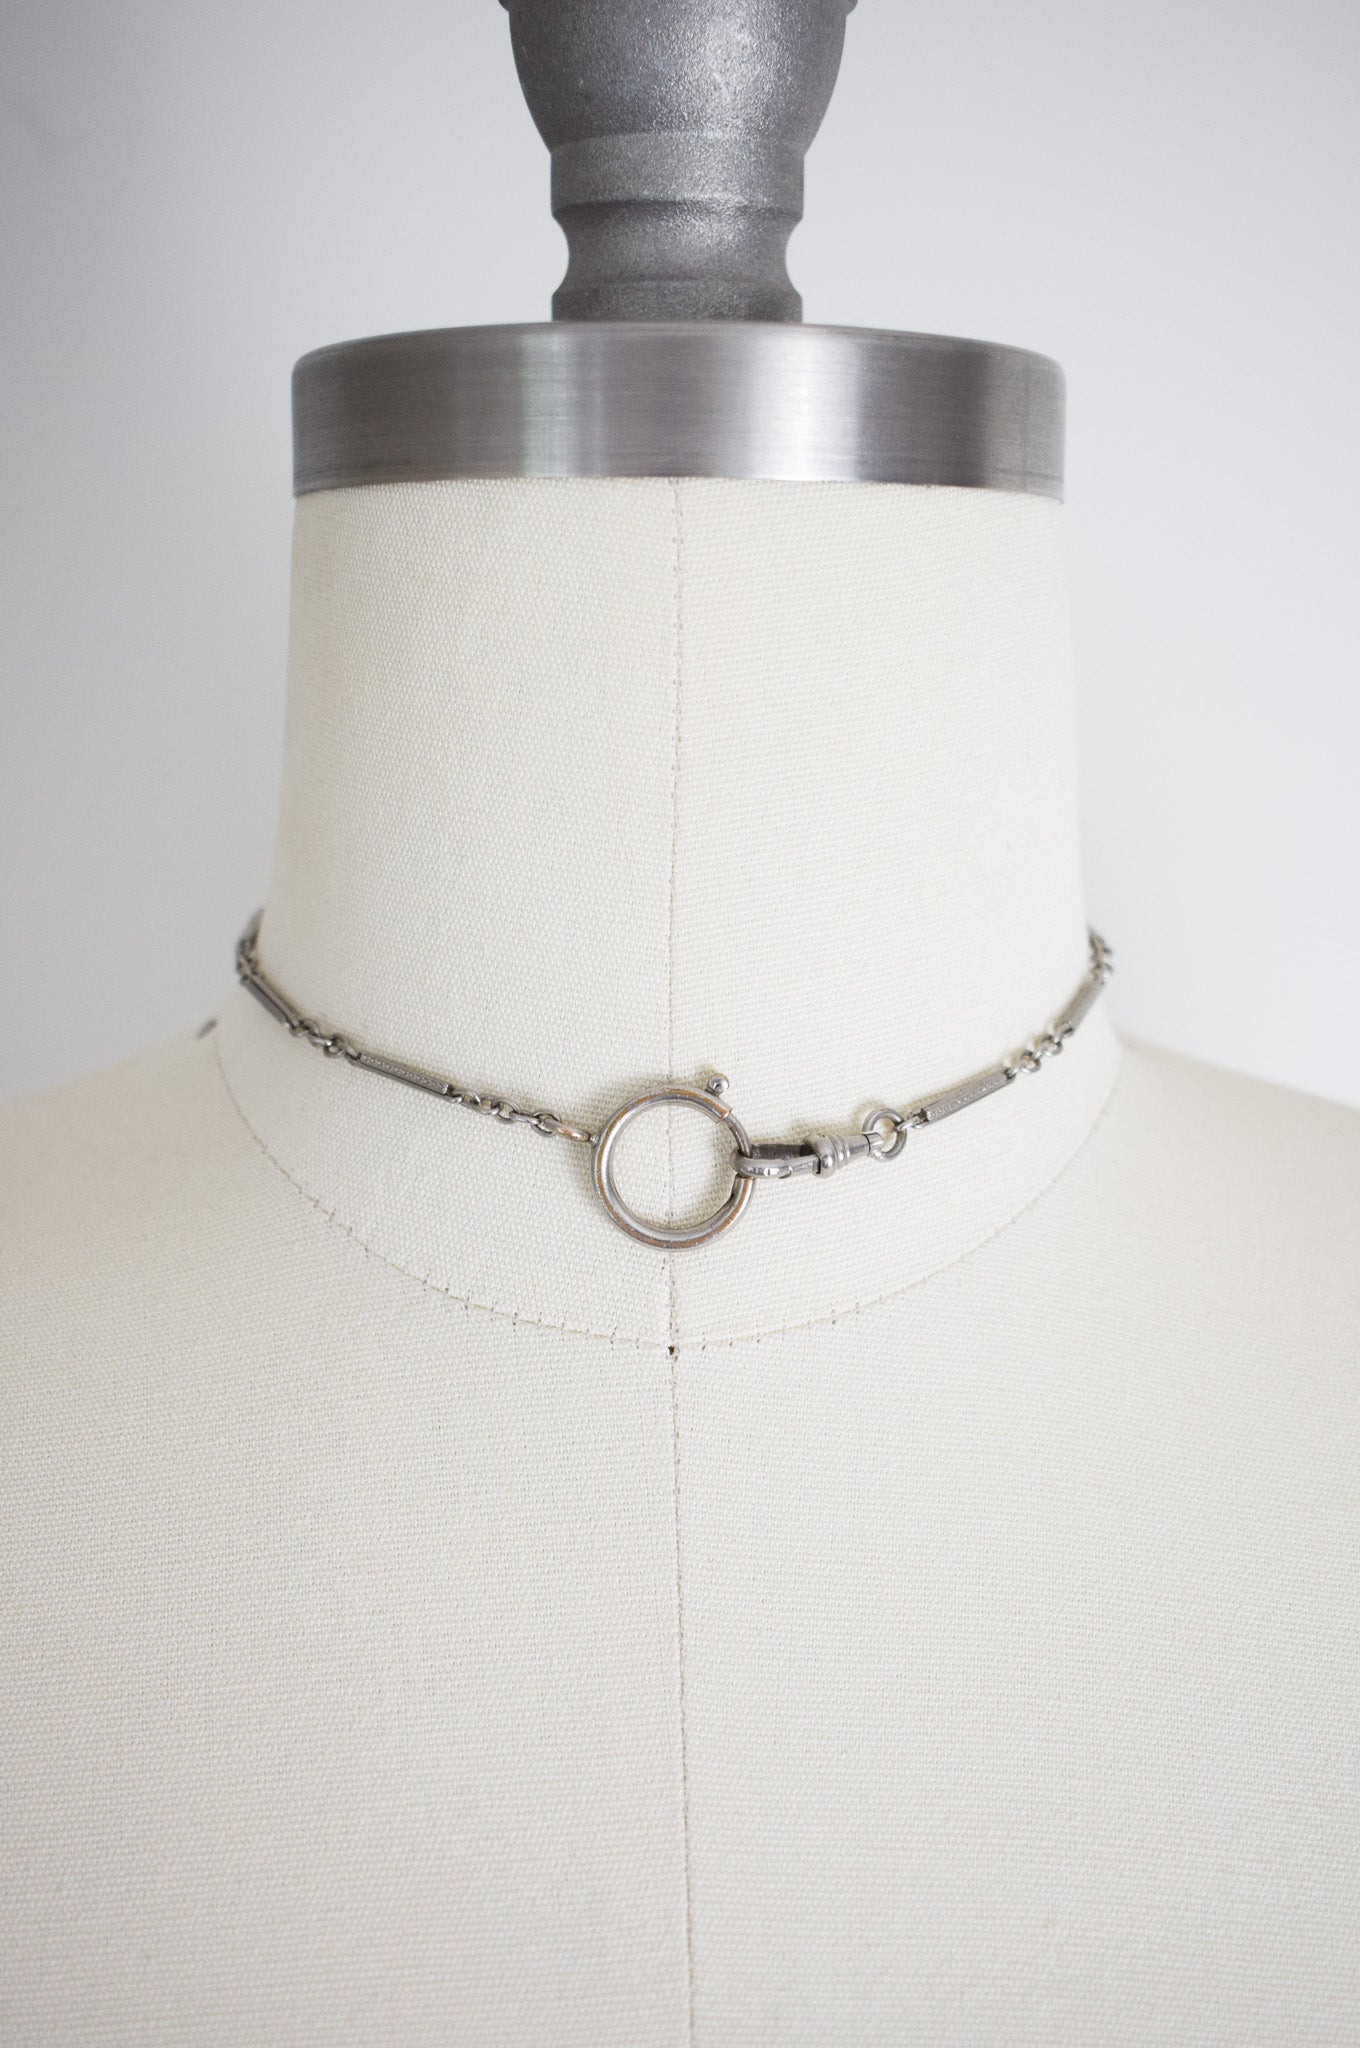 Antique Art Deco Silver Fob Chain Necklace / Bracelet